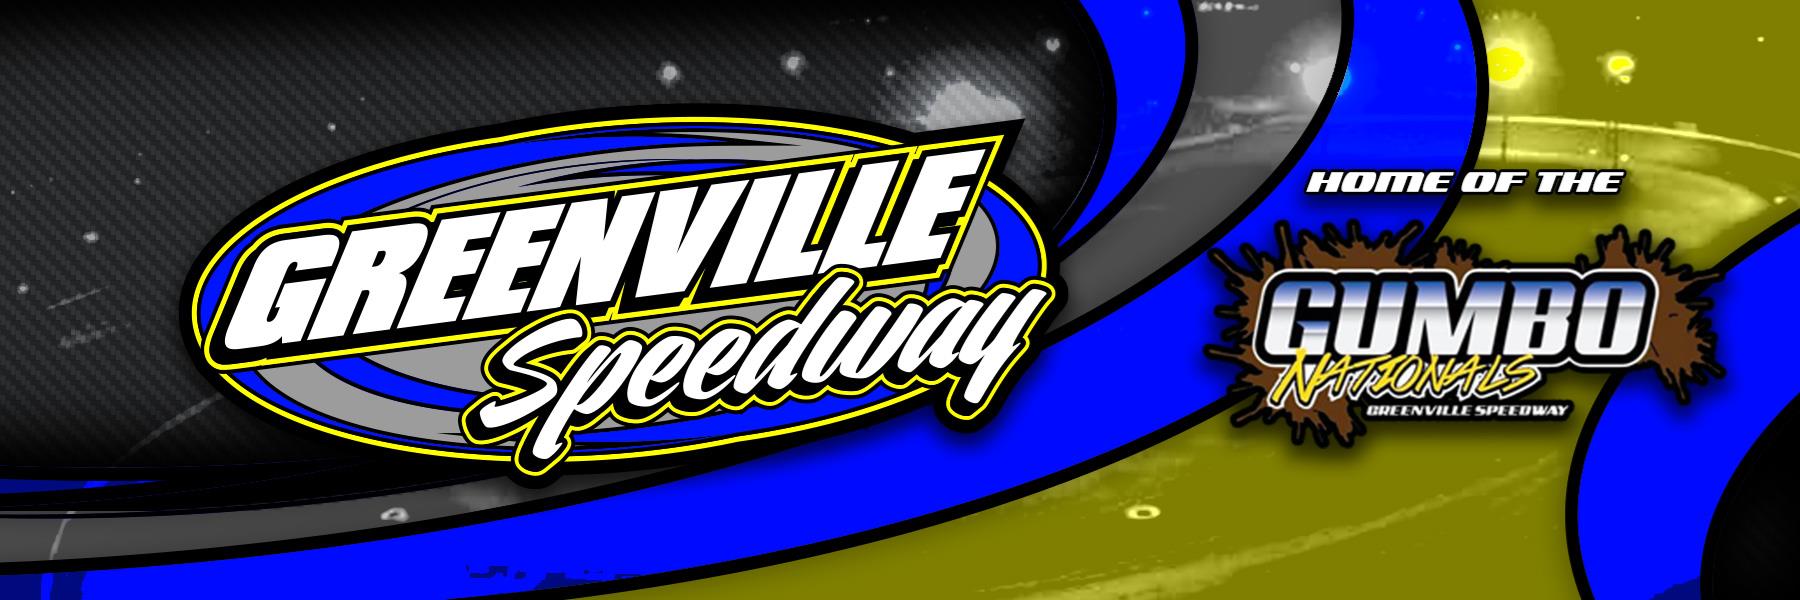 Greenville Speedway